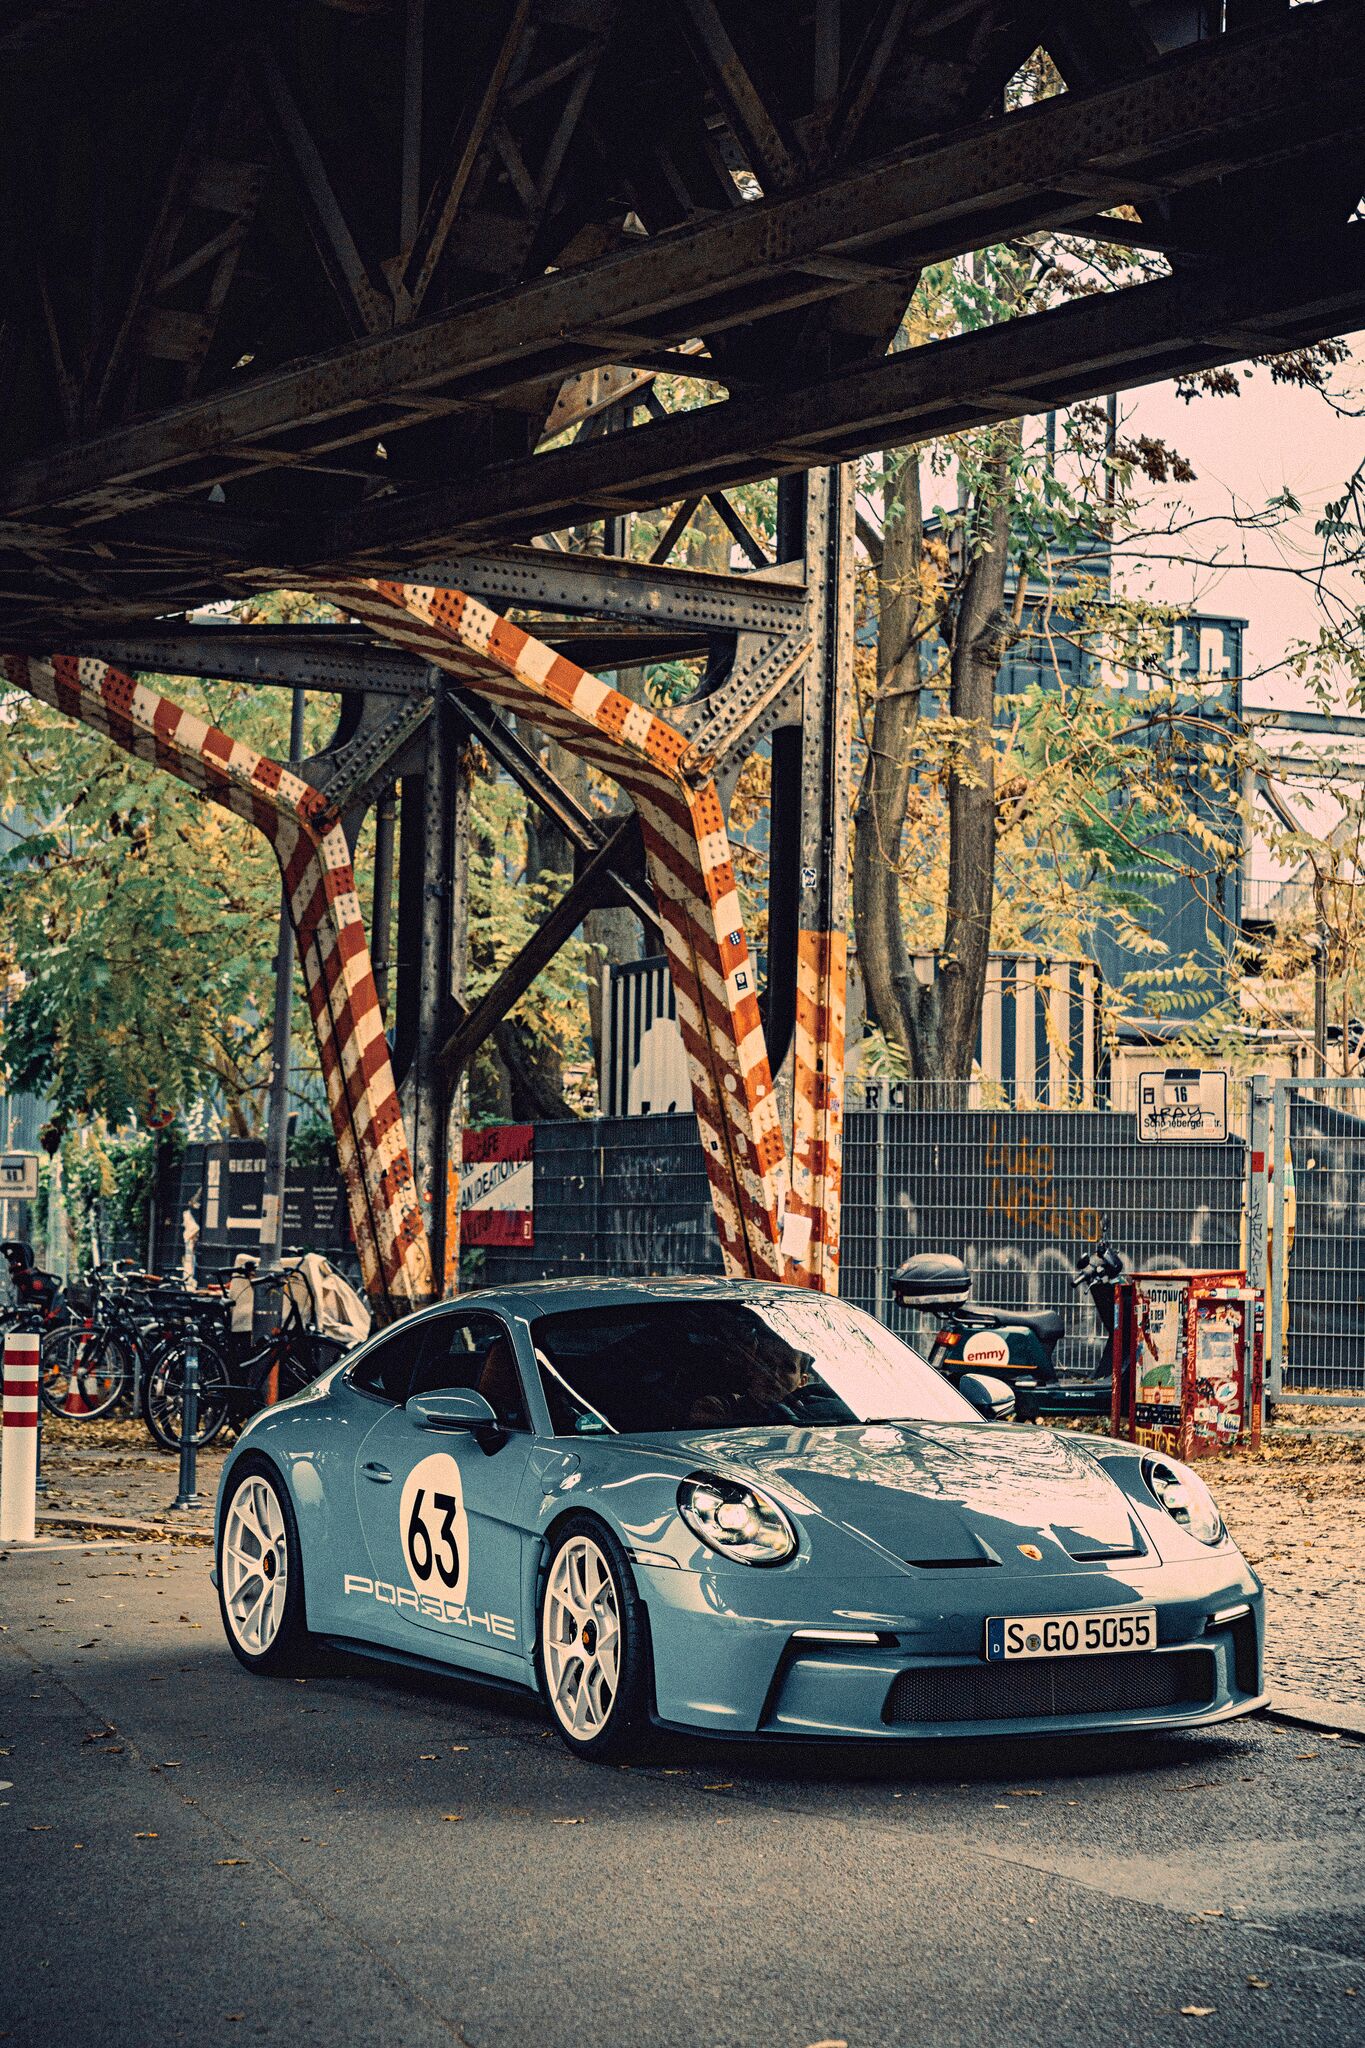 The Porsche Among The 911s